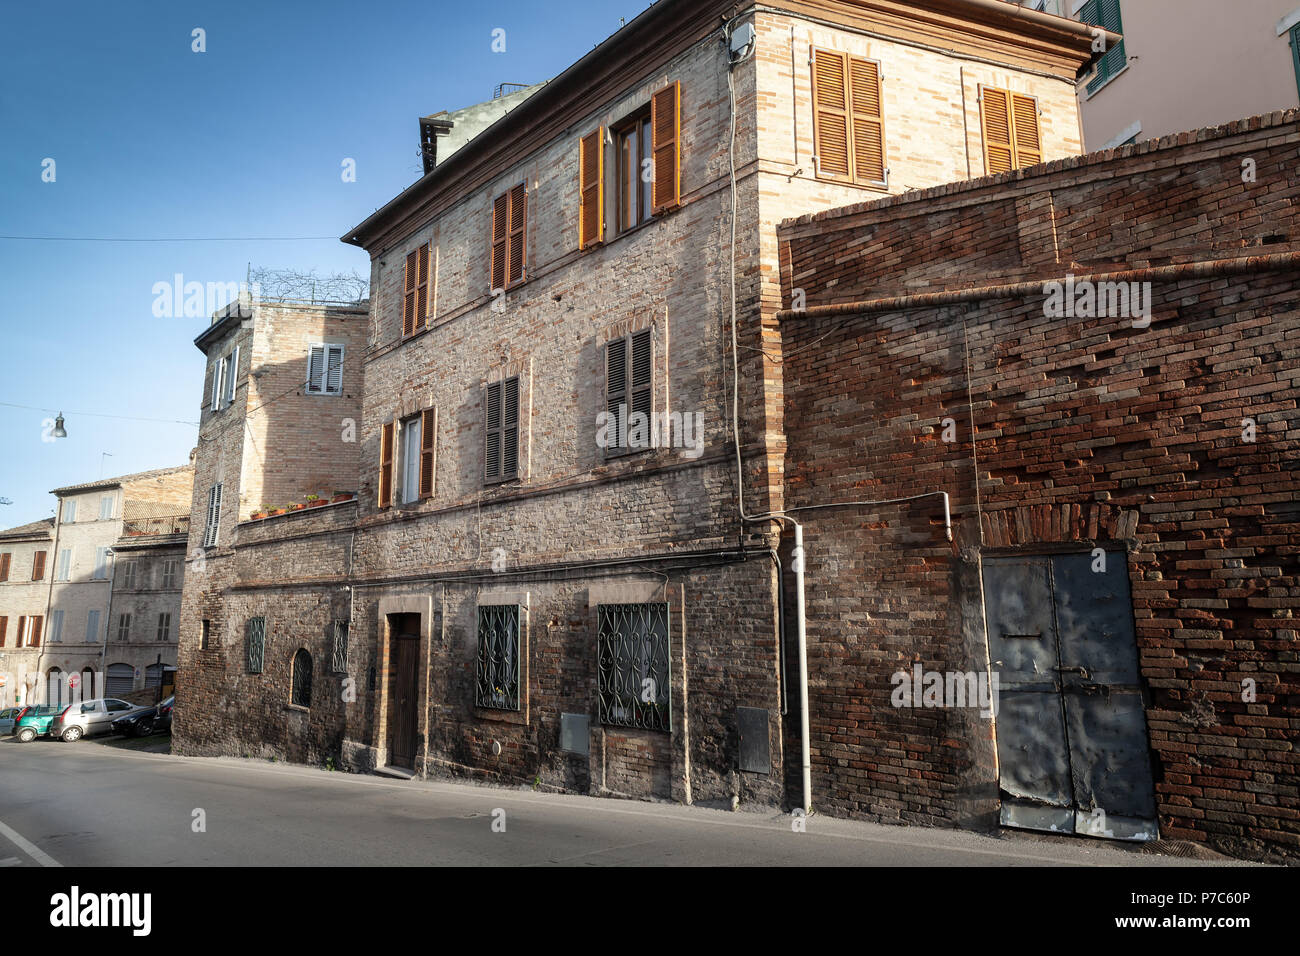 Street View di fermo con vecchie case, Italia Foto Stock